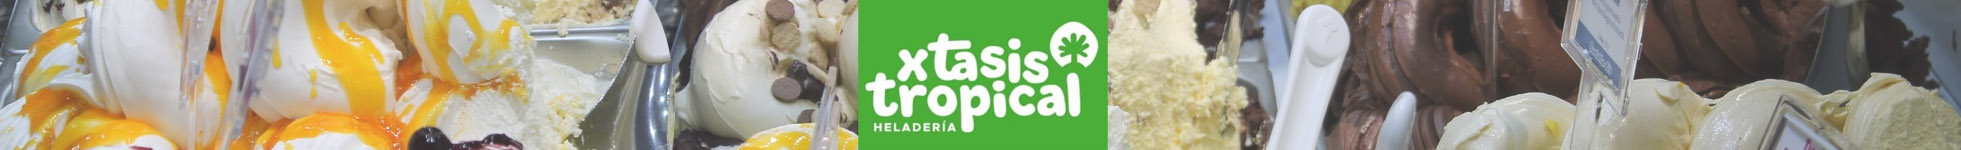 Xtasis Tropical